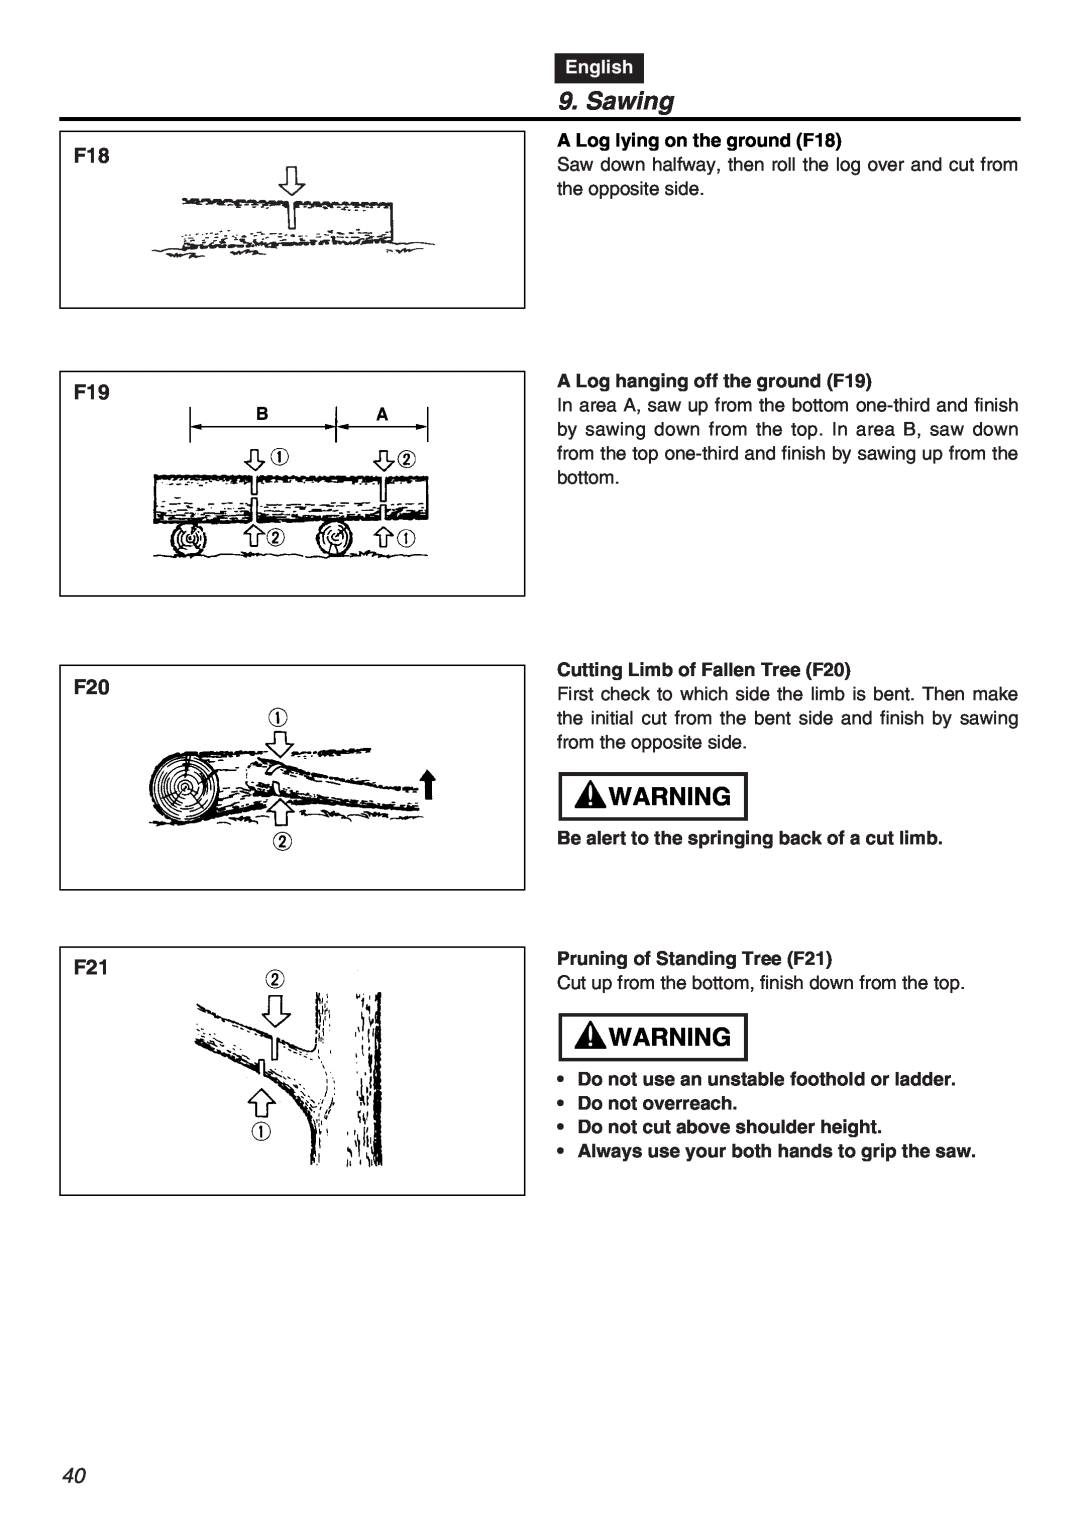 RedMax G5000AVS manual Sawing, F18 F19 F20 F21, English 